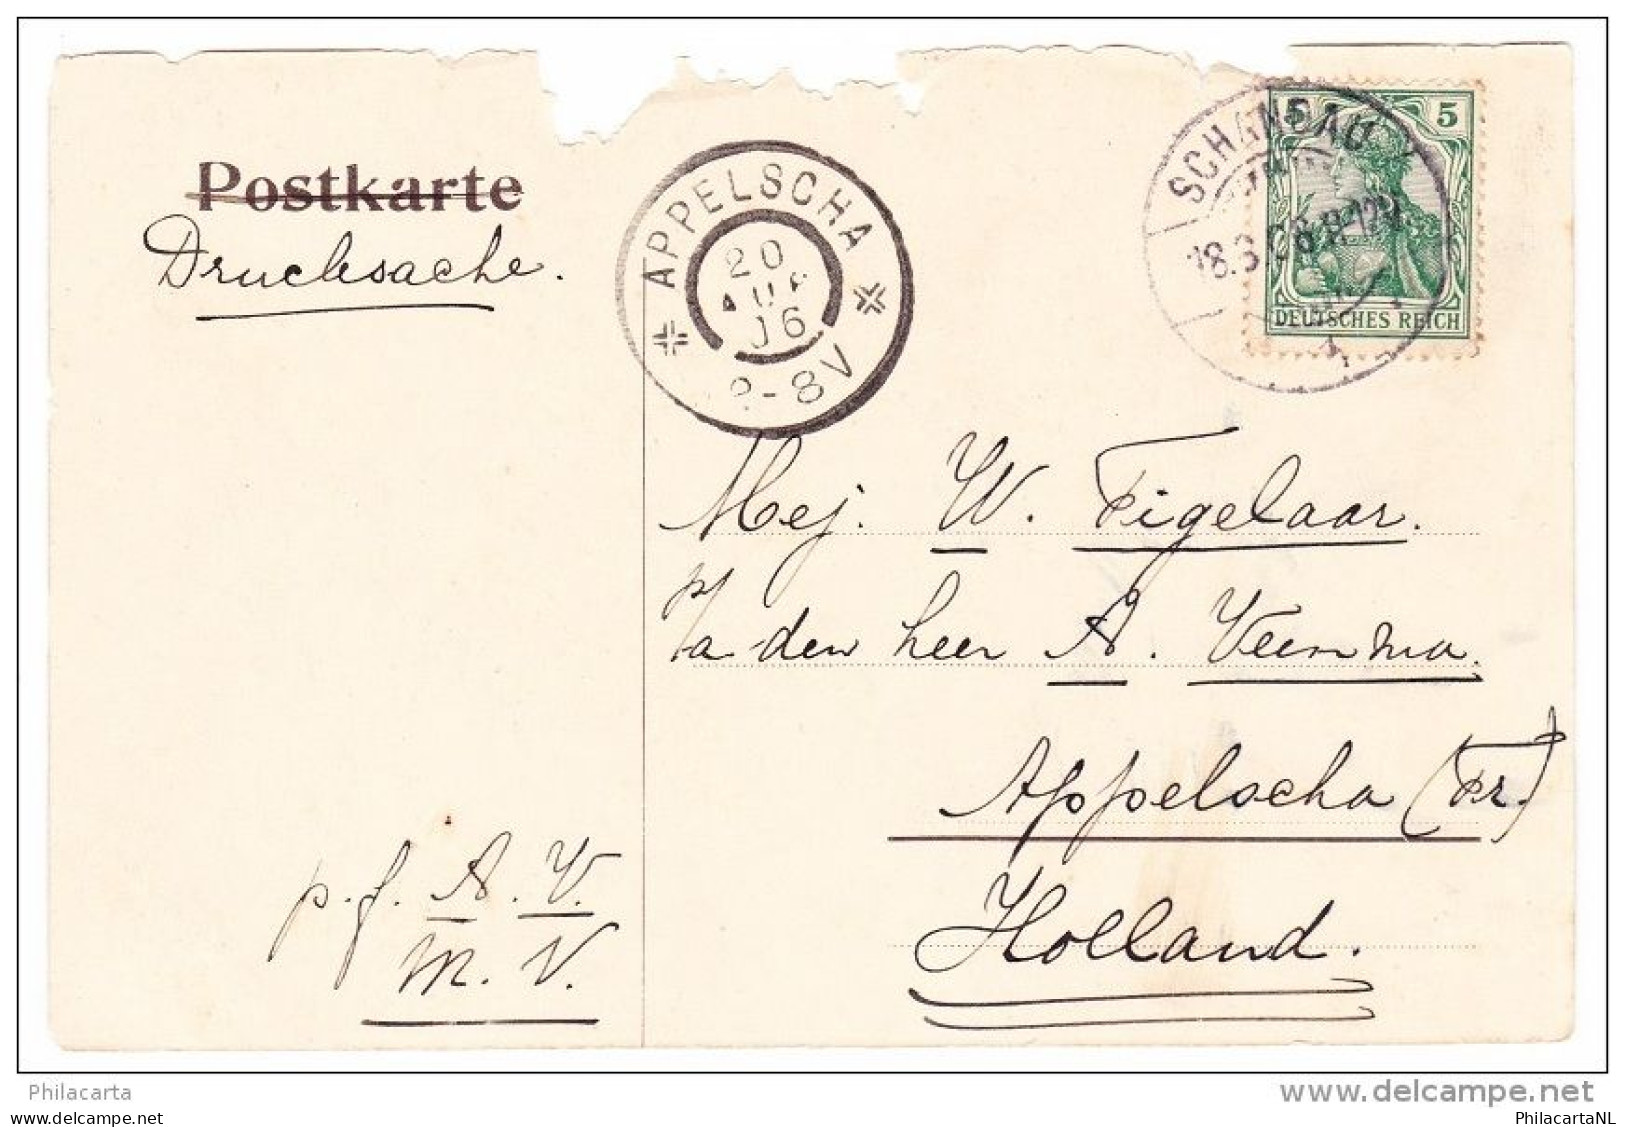 Sachs Basteibrucke - 1906 Zwaar Beschadigd - Bastei (sächs. Schweiz)